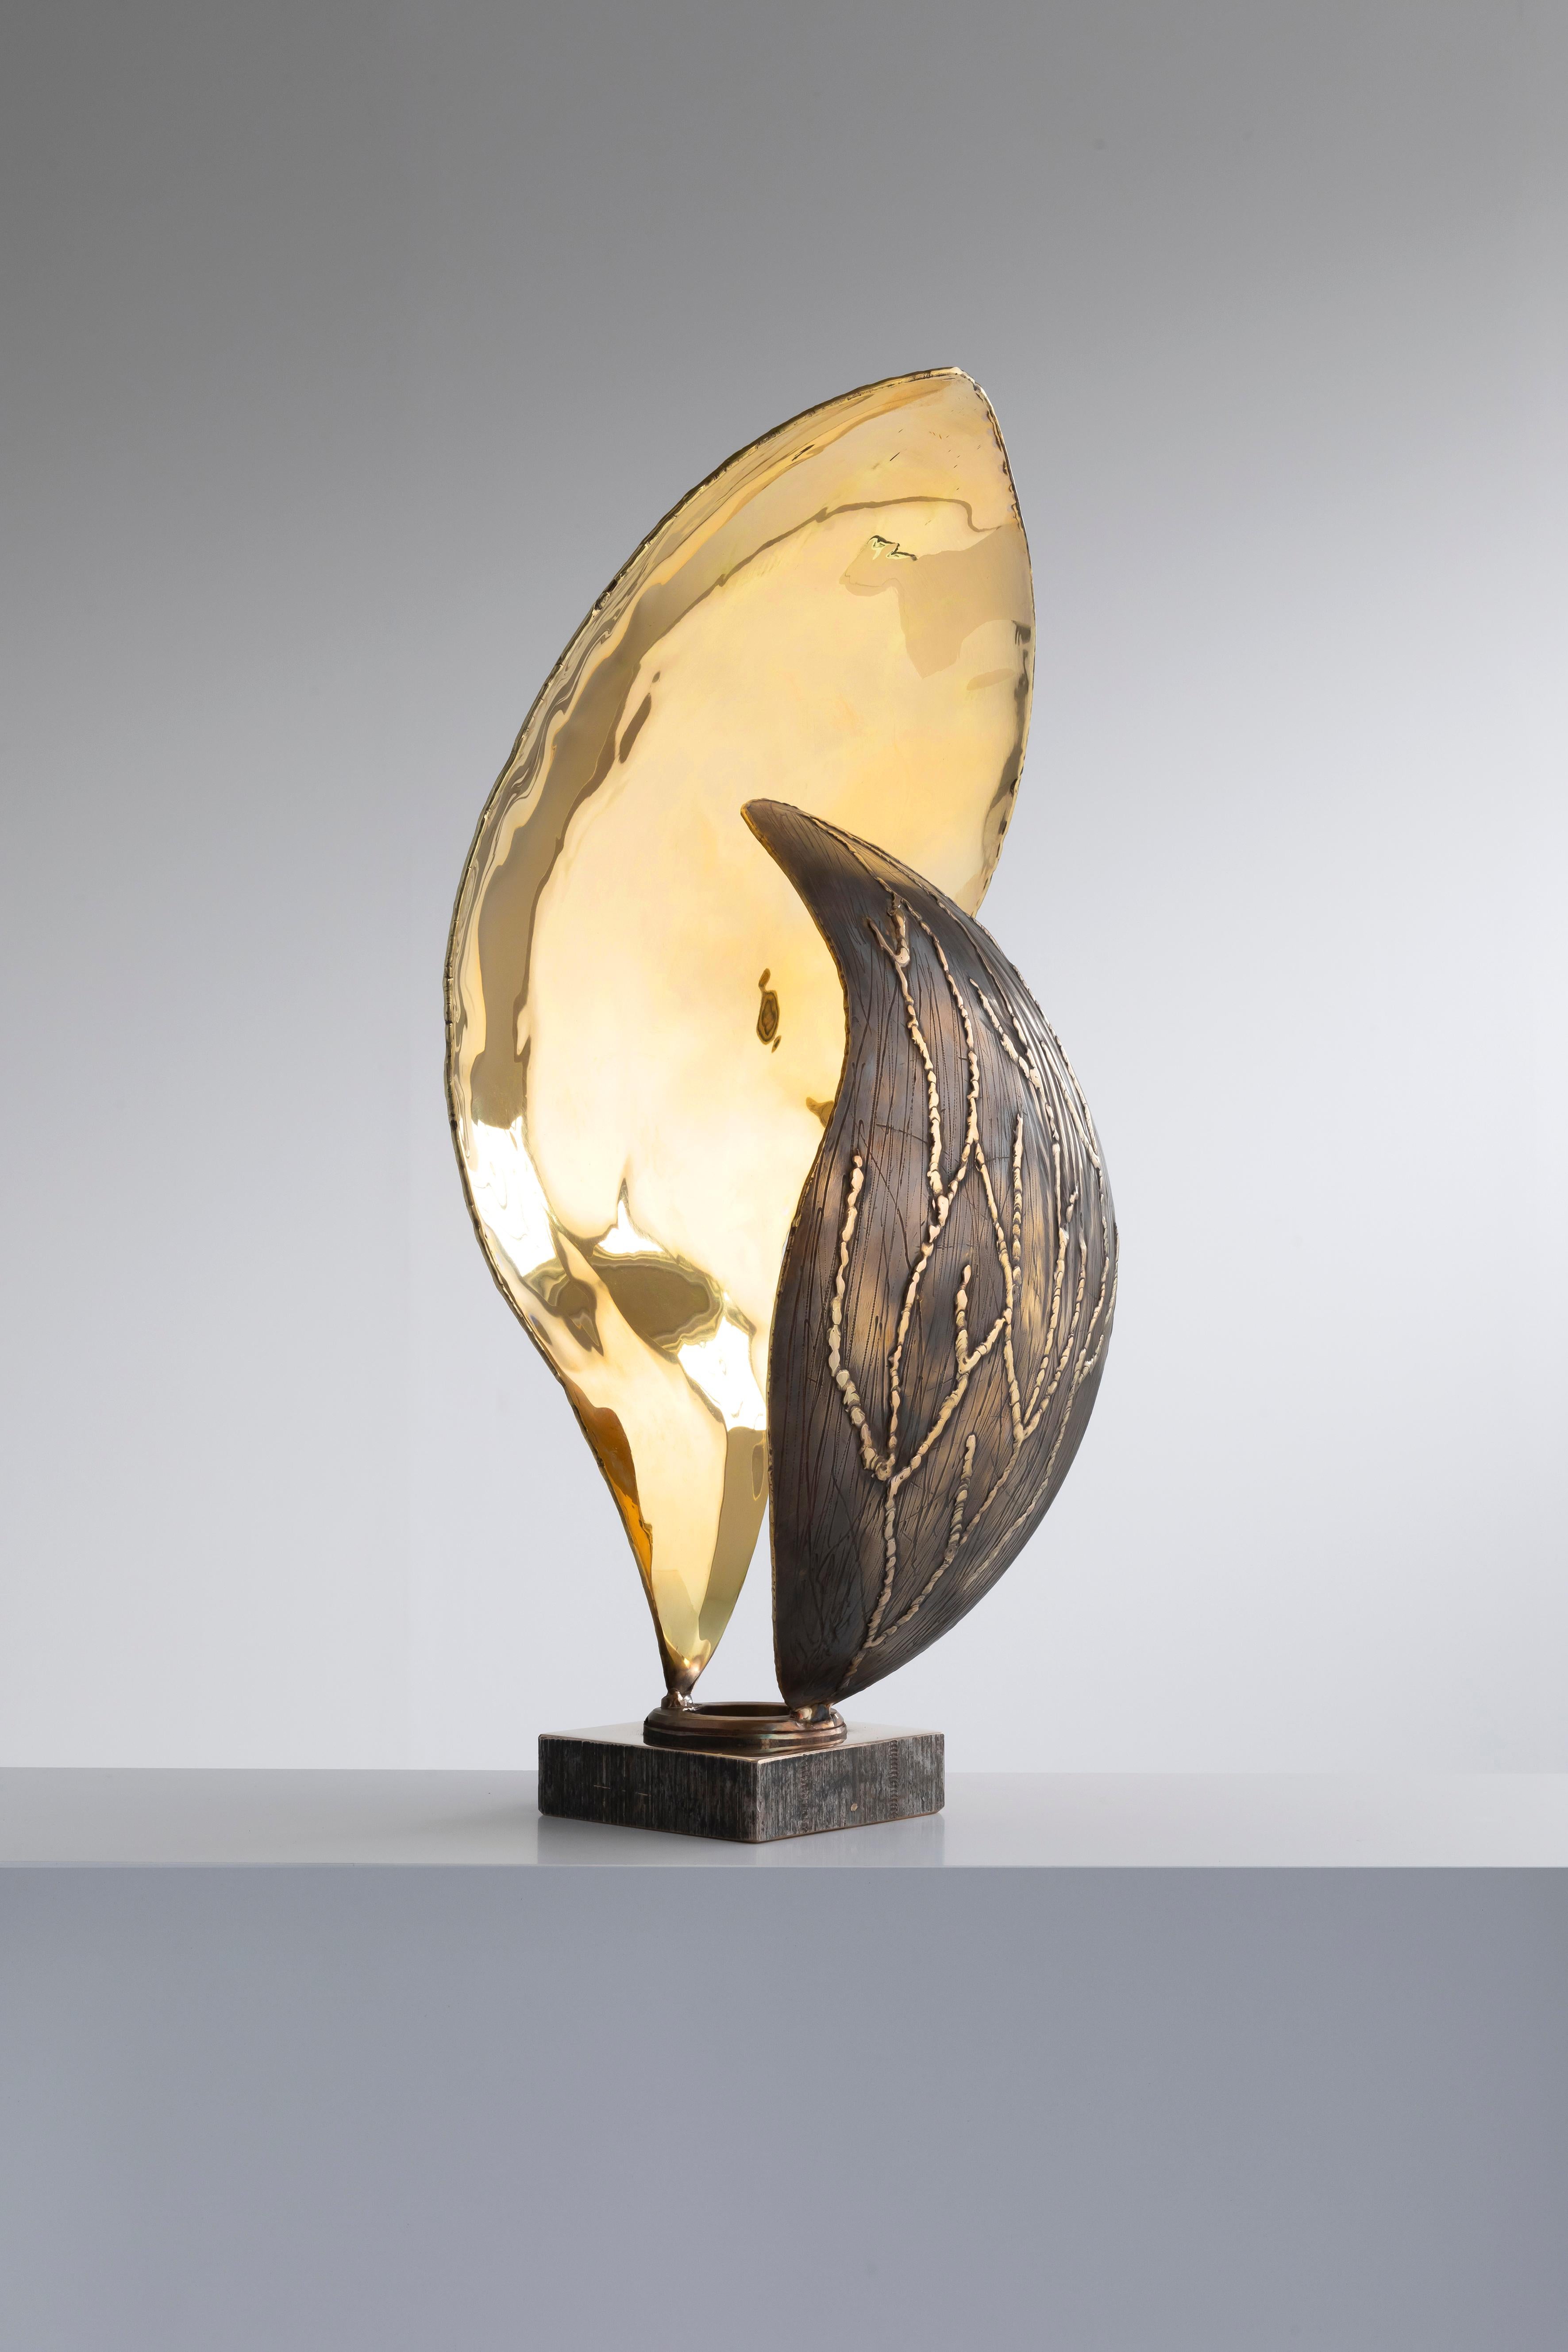 Lampe Peitil de Samuel Costantini
Entièrement fait à la main par l'artiste.
Edition 9+ 1 PA
Dimensions : Diamètre 17 x hauteur 45 cm
Materials : feuille de cuivre travaillée à la main

Deux pétales en laiton reposant sur une base en bronze qui